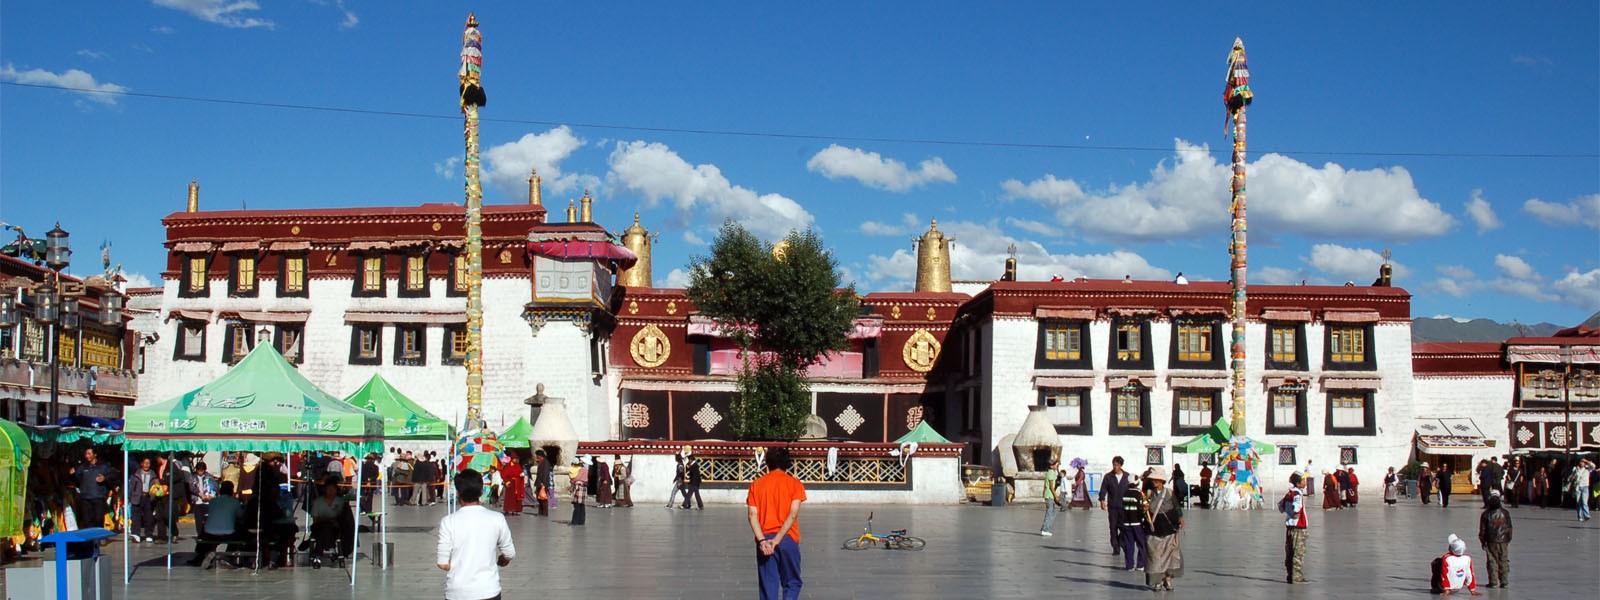 Ganden and Samye Monastery Trekking in Tibet